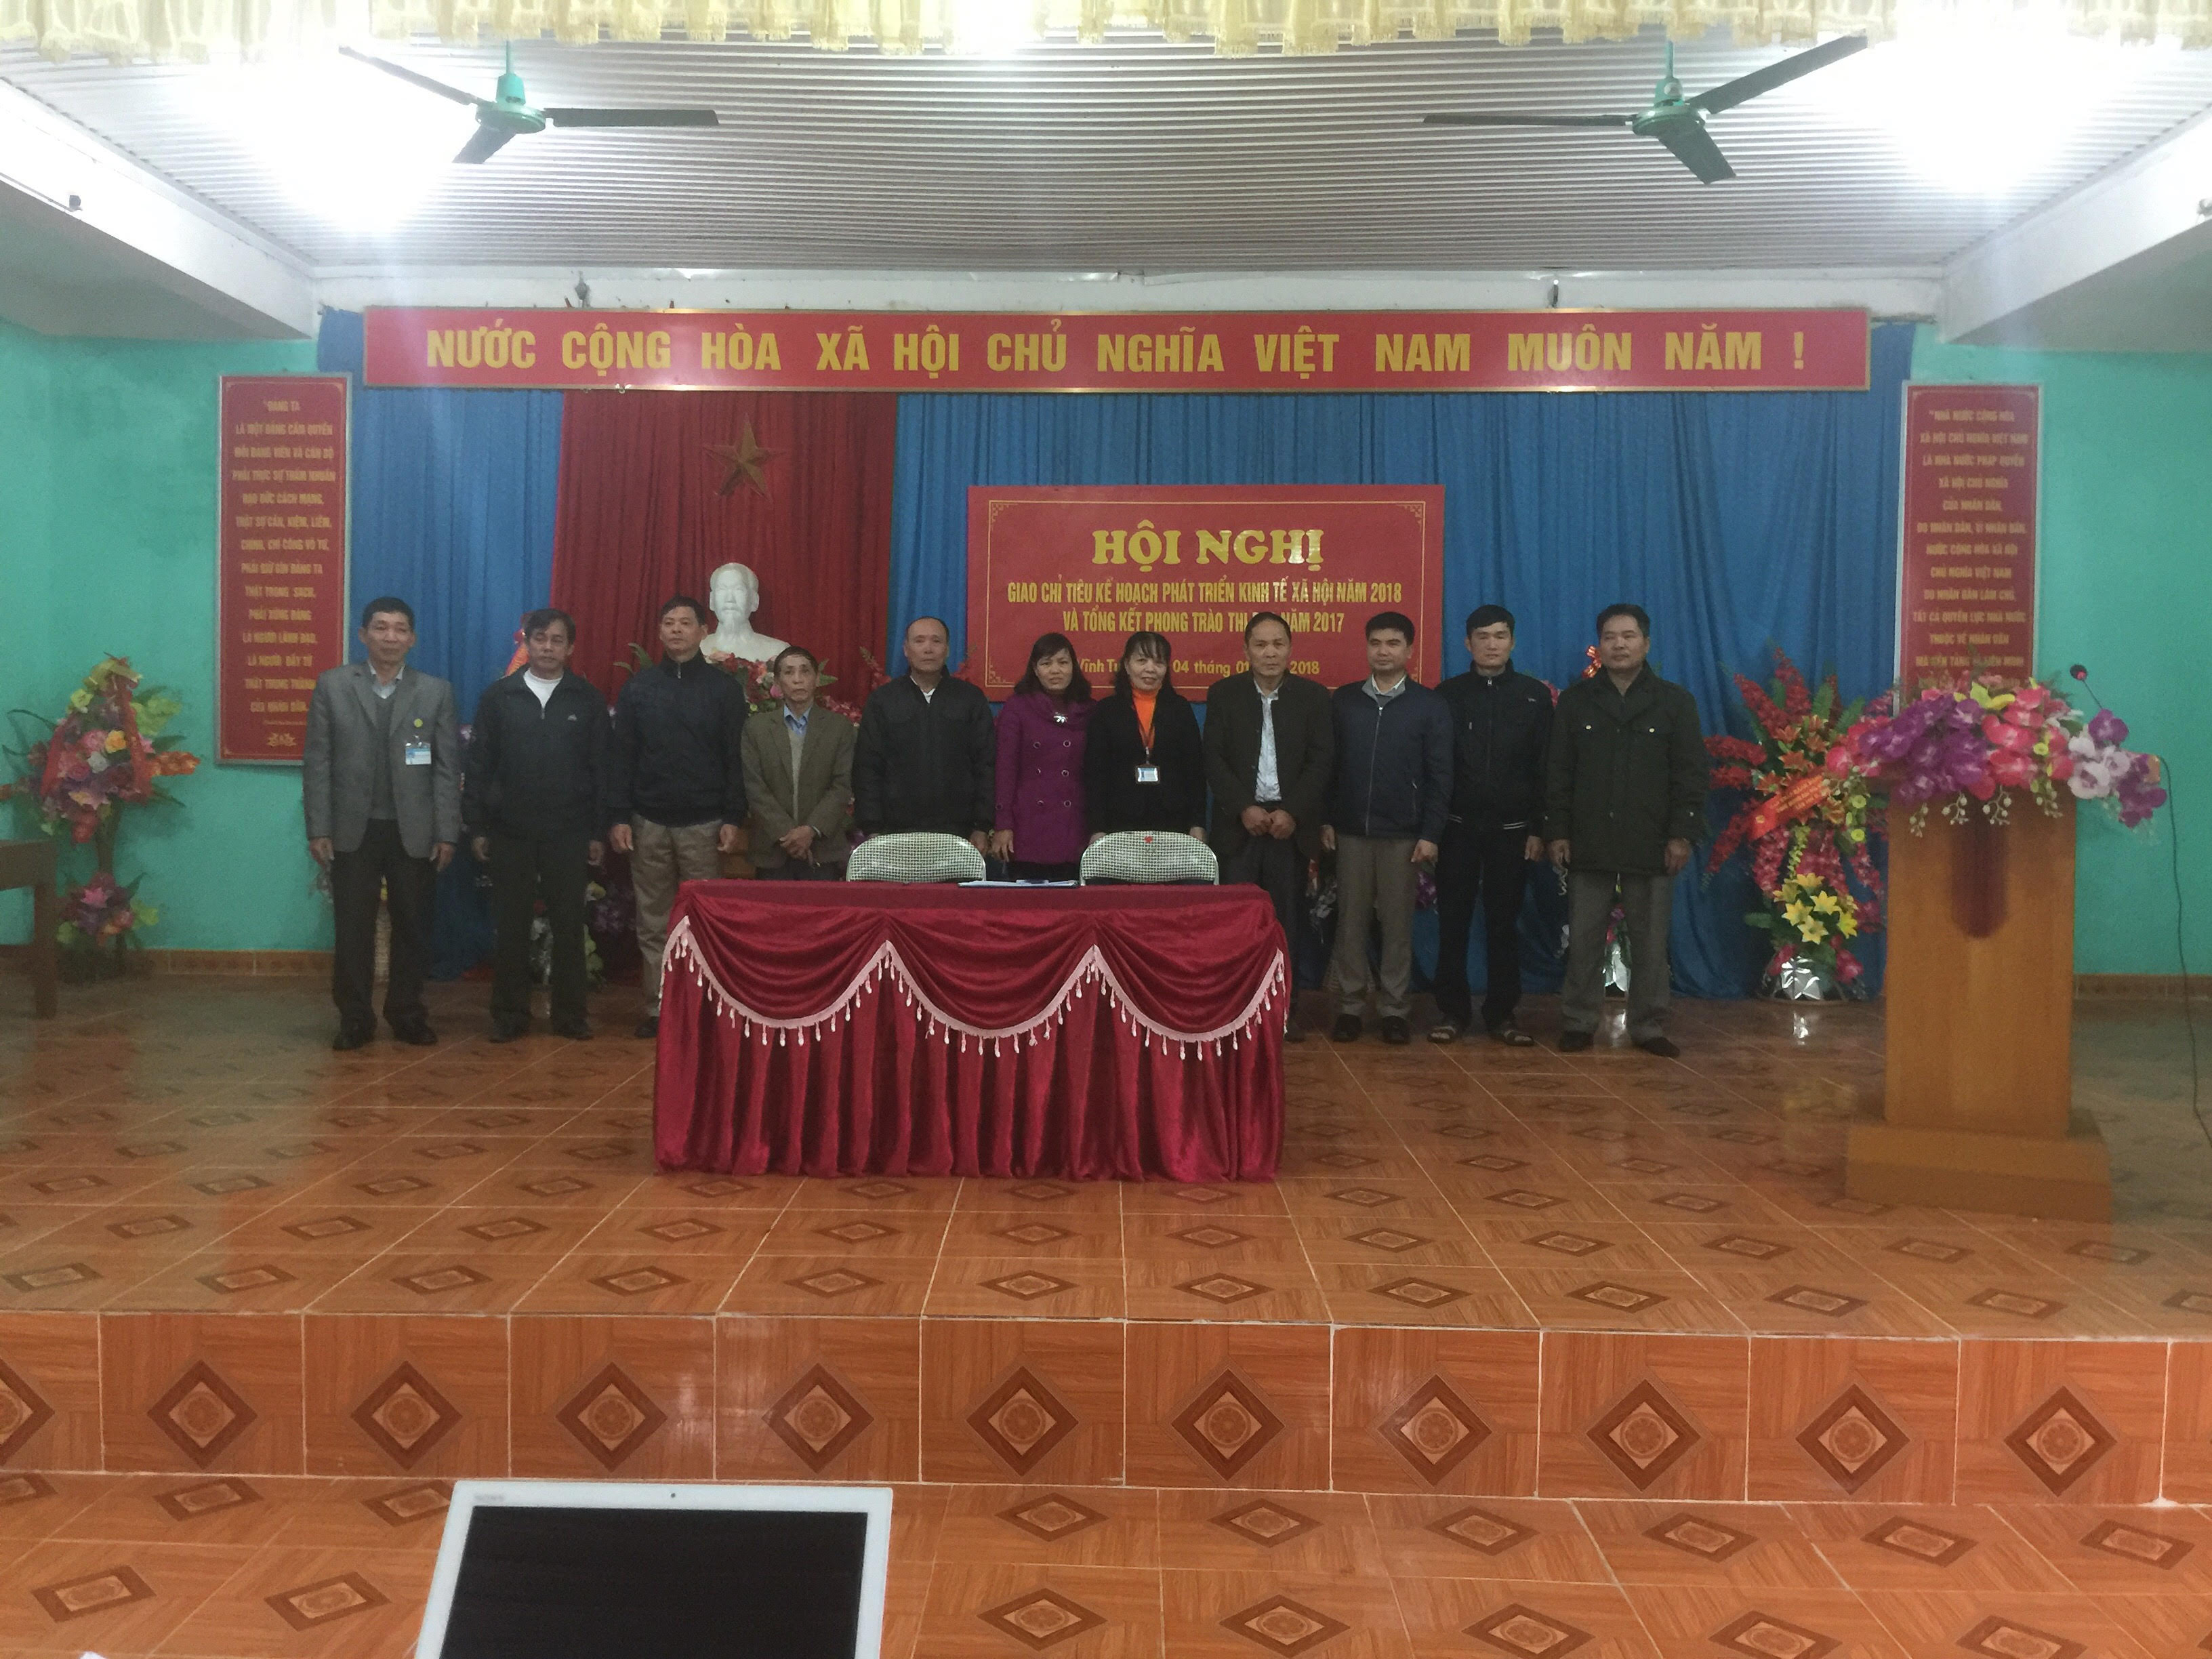 Sáng ngày 30 tháng 12 năm 2017 được sự nhất trí của Đảng ủy thị trấn, Ủy ban nhân dân thị trấn Vĩnh Tuy, huyện Bắc Quang, tỉnh Hà Giang tổ chức Hội nghị giao chỉ tiêu phát triển kinh tế - xã hội năm 2018 và tổng kết phong trào thi đua năm 2017 do Thường trực Ủy ban nhân dân chủ trì hội nghị